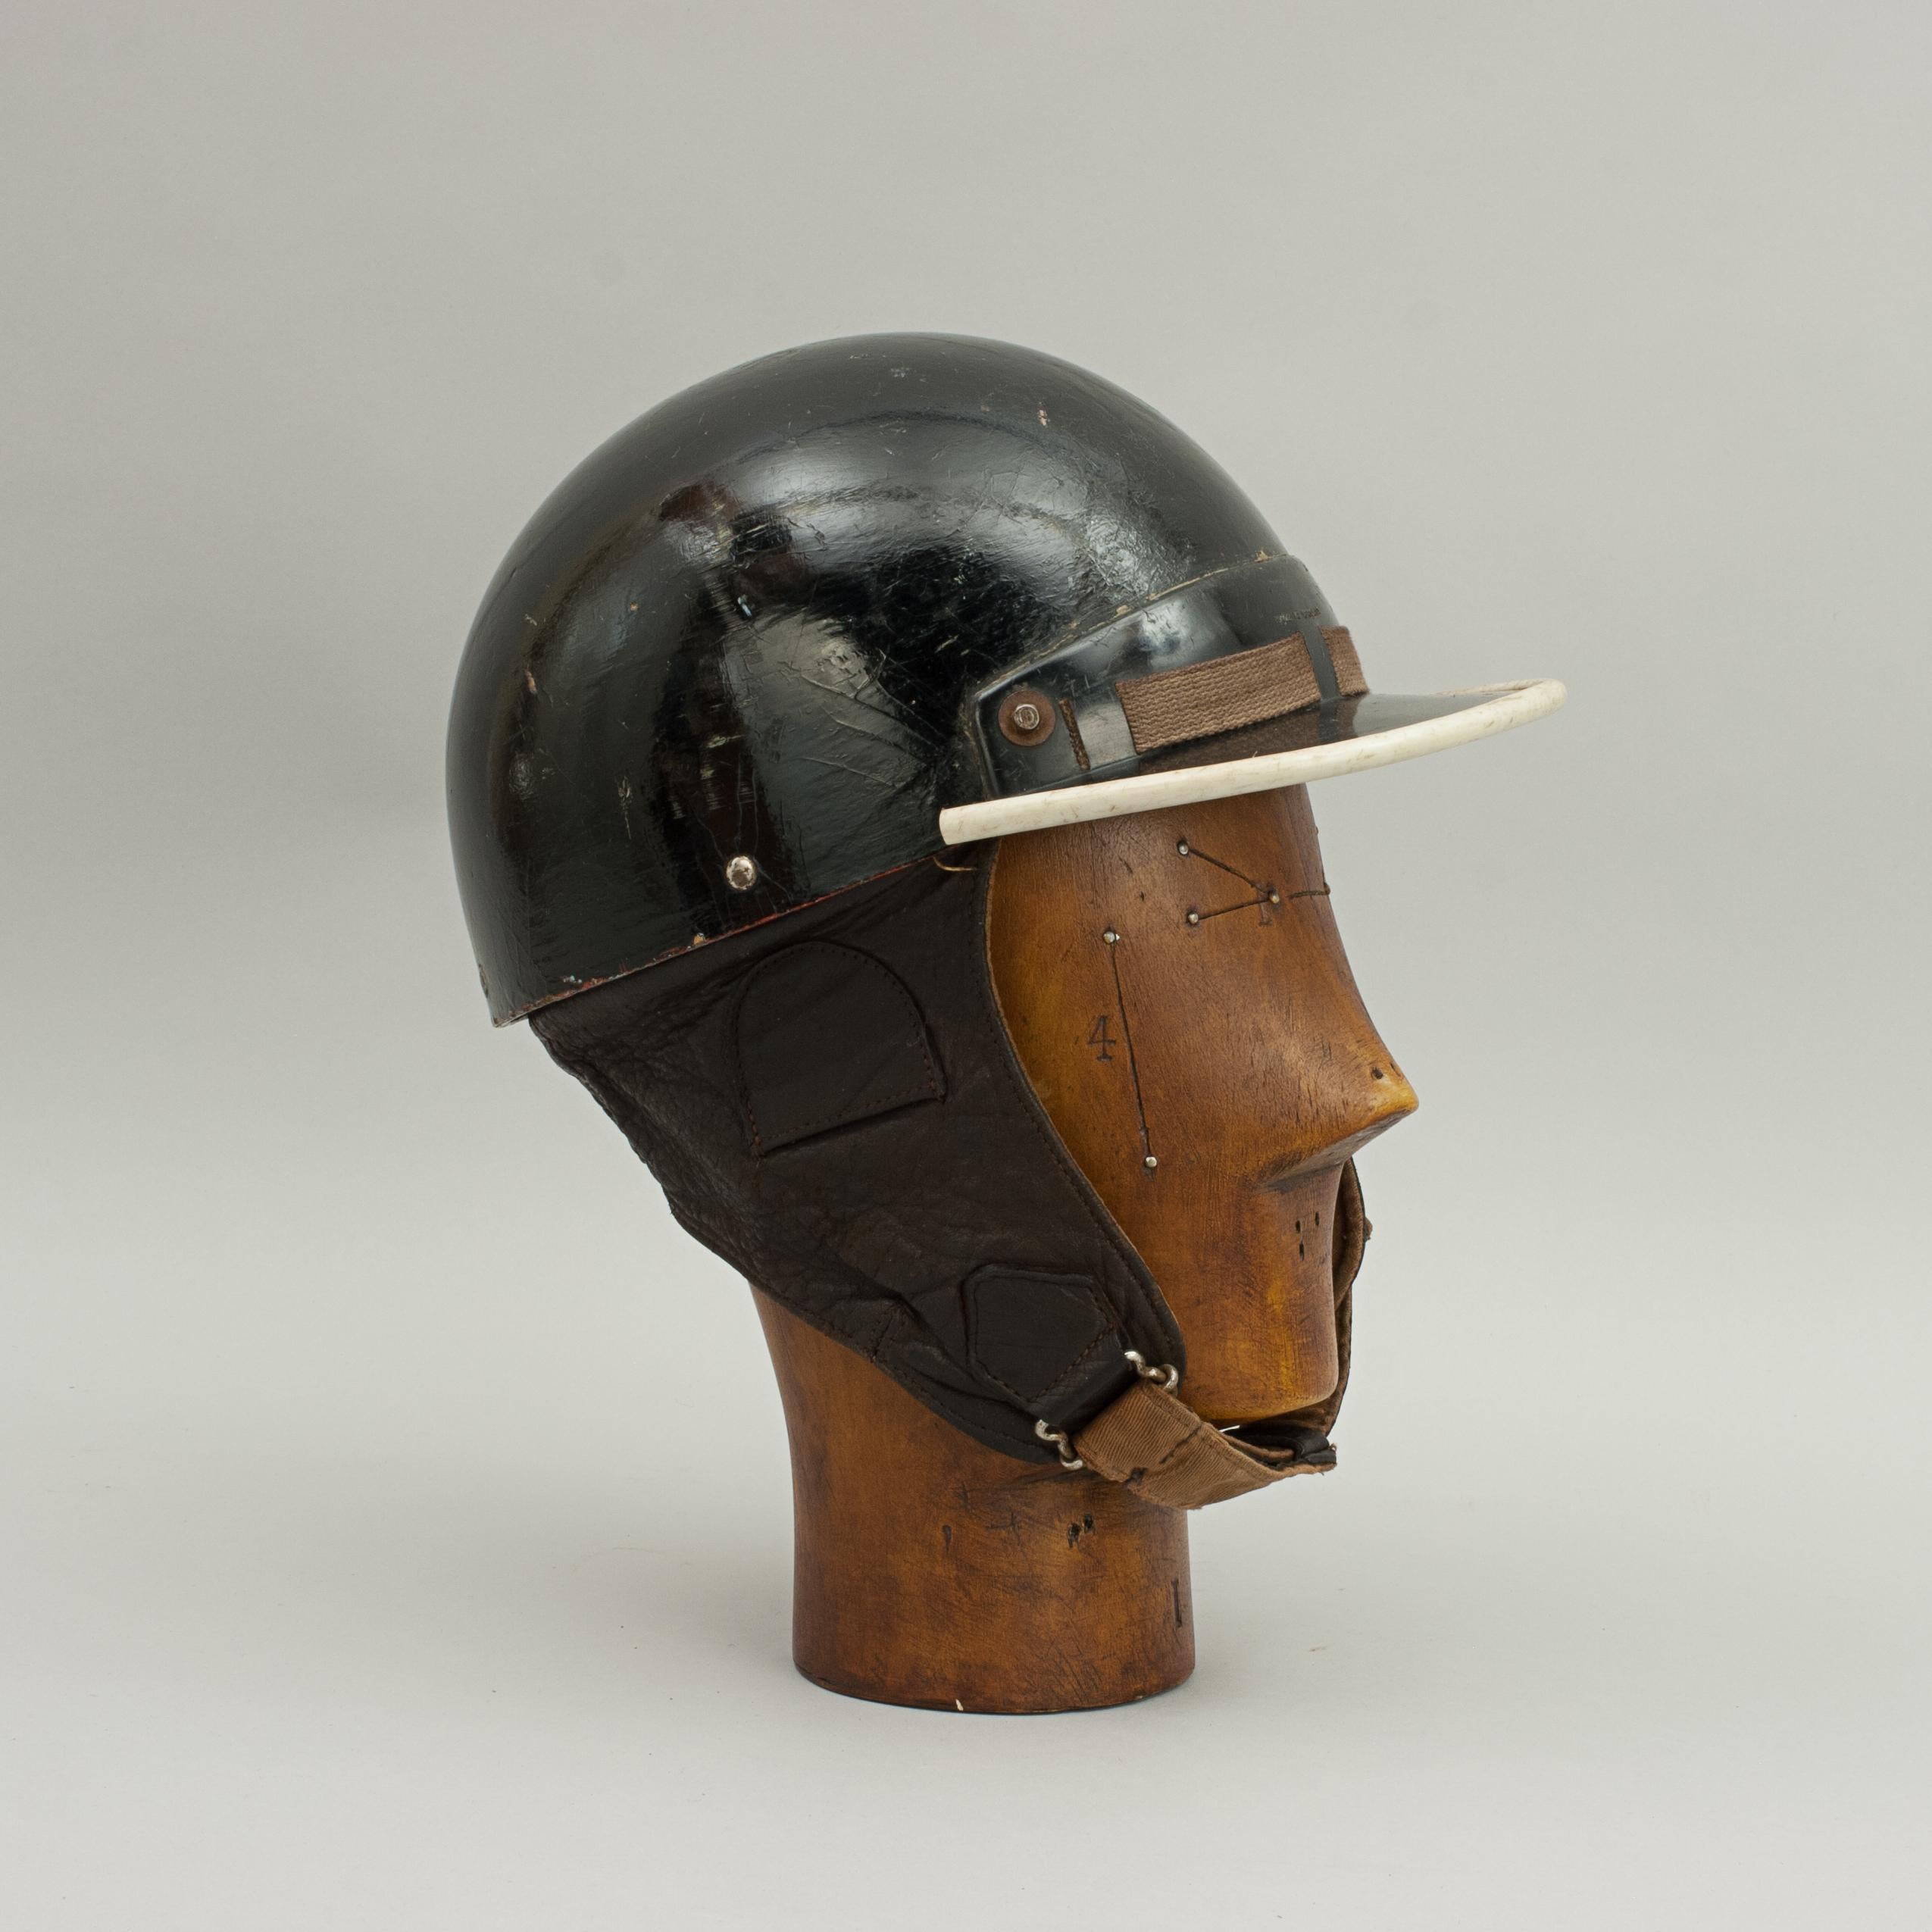 cromwell helmets ltd